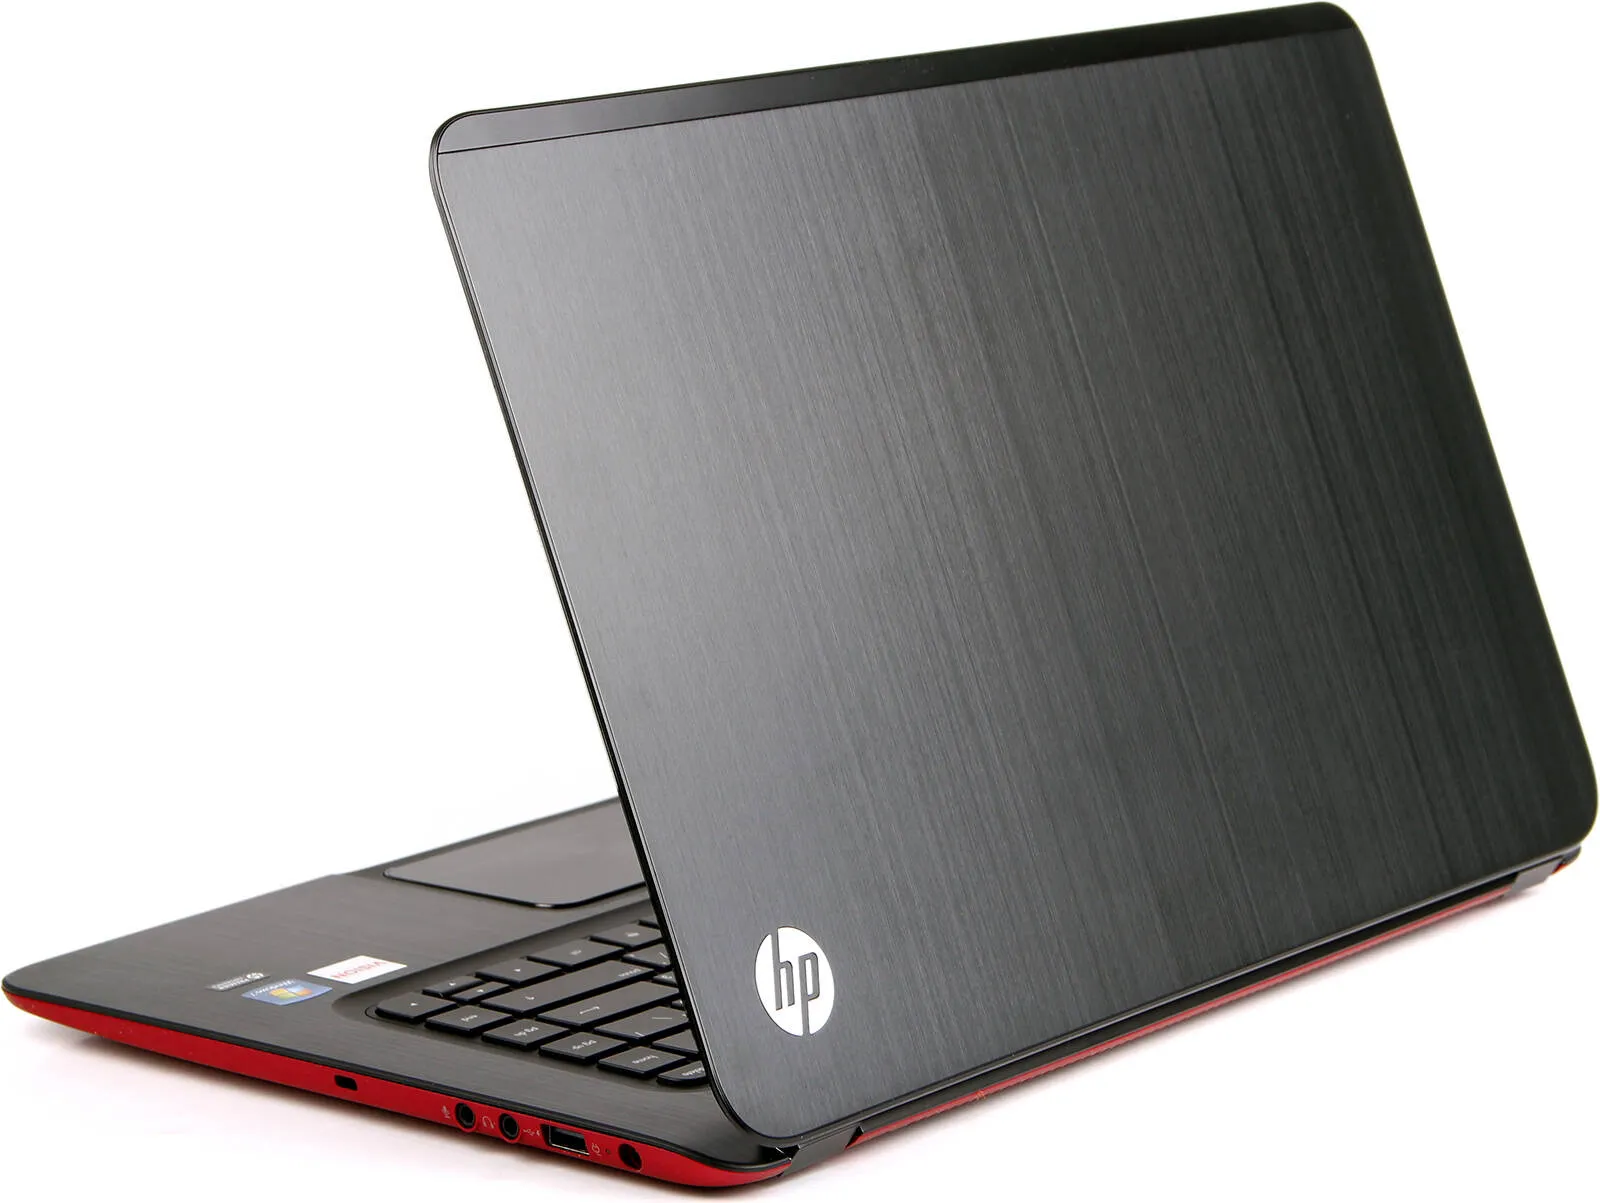 Ноутбук HP 250 G5 /Intel i3-5005U/4 GB DDR3/ 500GB HDD /15.6" HD LED/2GB AMD Radeon R5 M430/ DVD / RUS#2